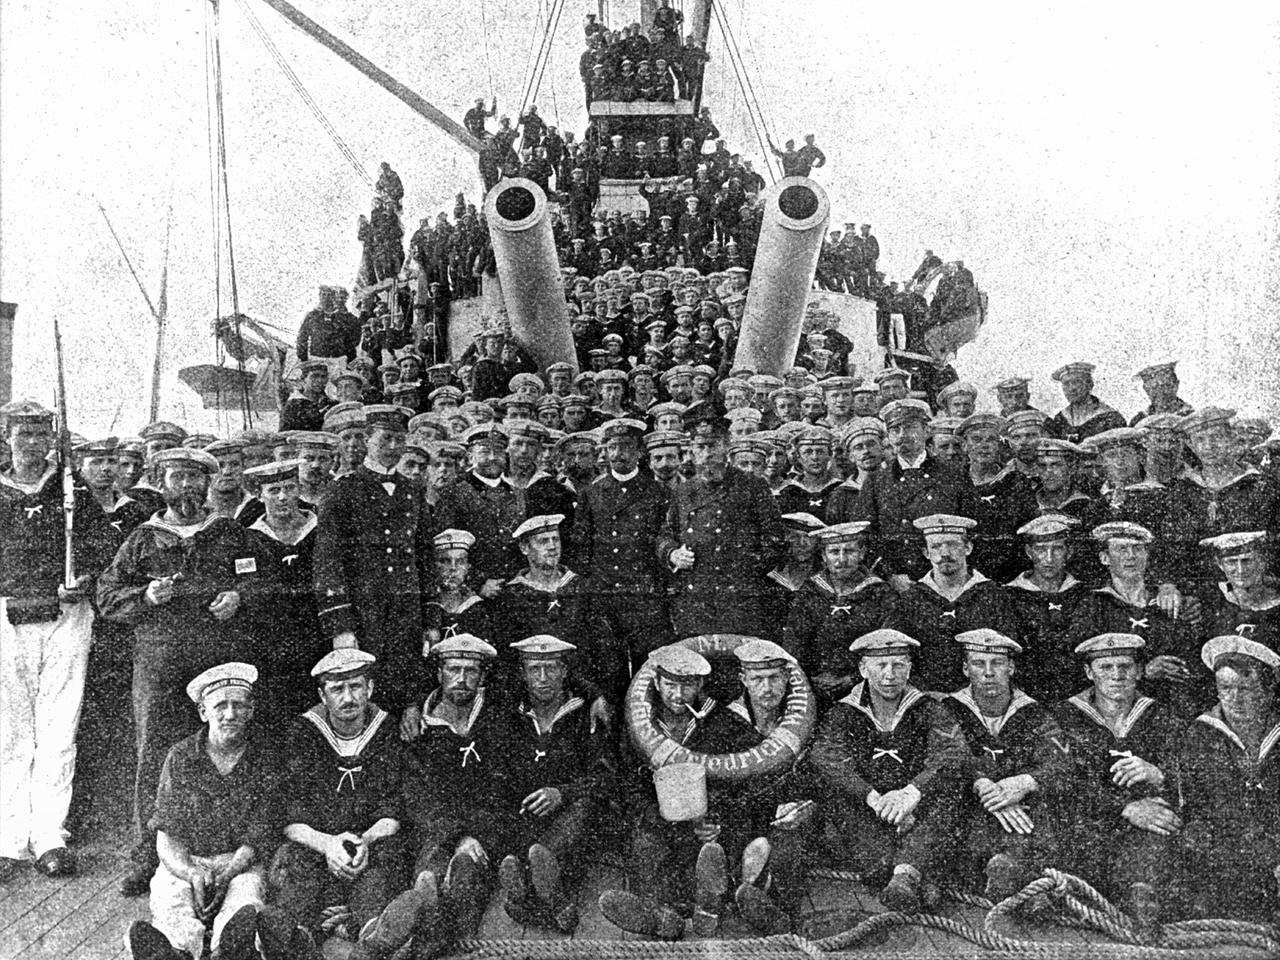 Die Besatzung des Flagschiffs der 1. Linienschiffsdivision "Kurfürst Friedrich Wilhelm". Die 1. Linienschiffsdivision verließ am 11. Juli 1900 Wilhelmshaven, um sich an der Niederschlagung des Boxeraufstands in China zu beteiligen.